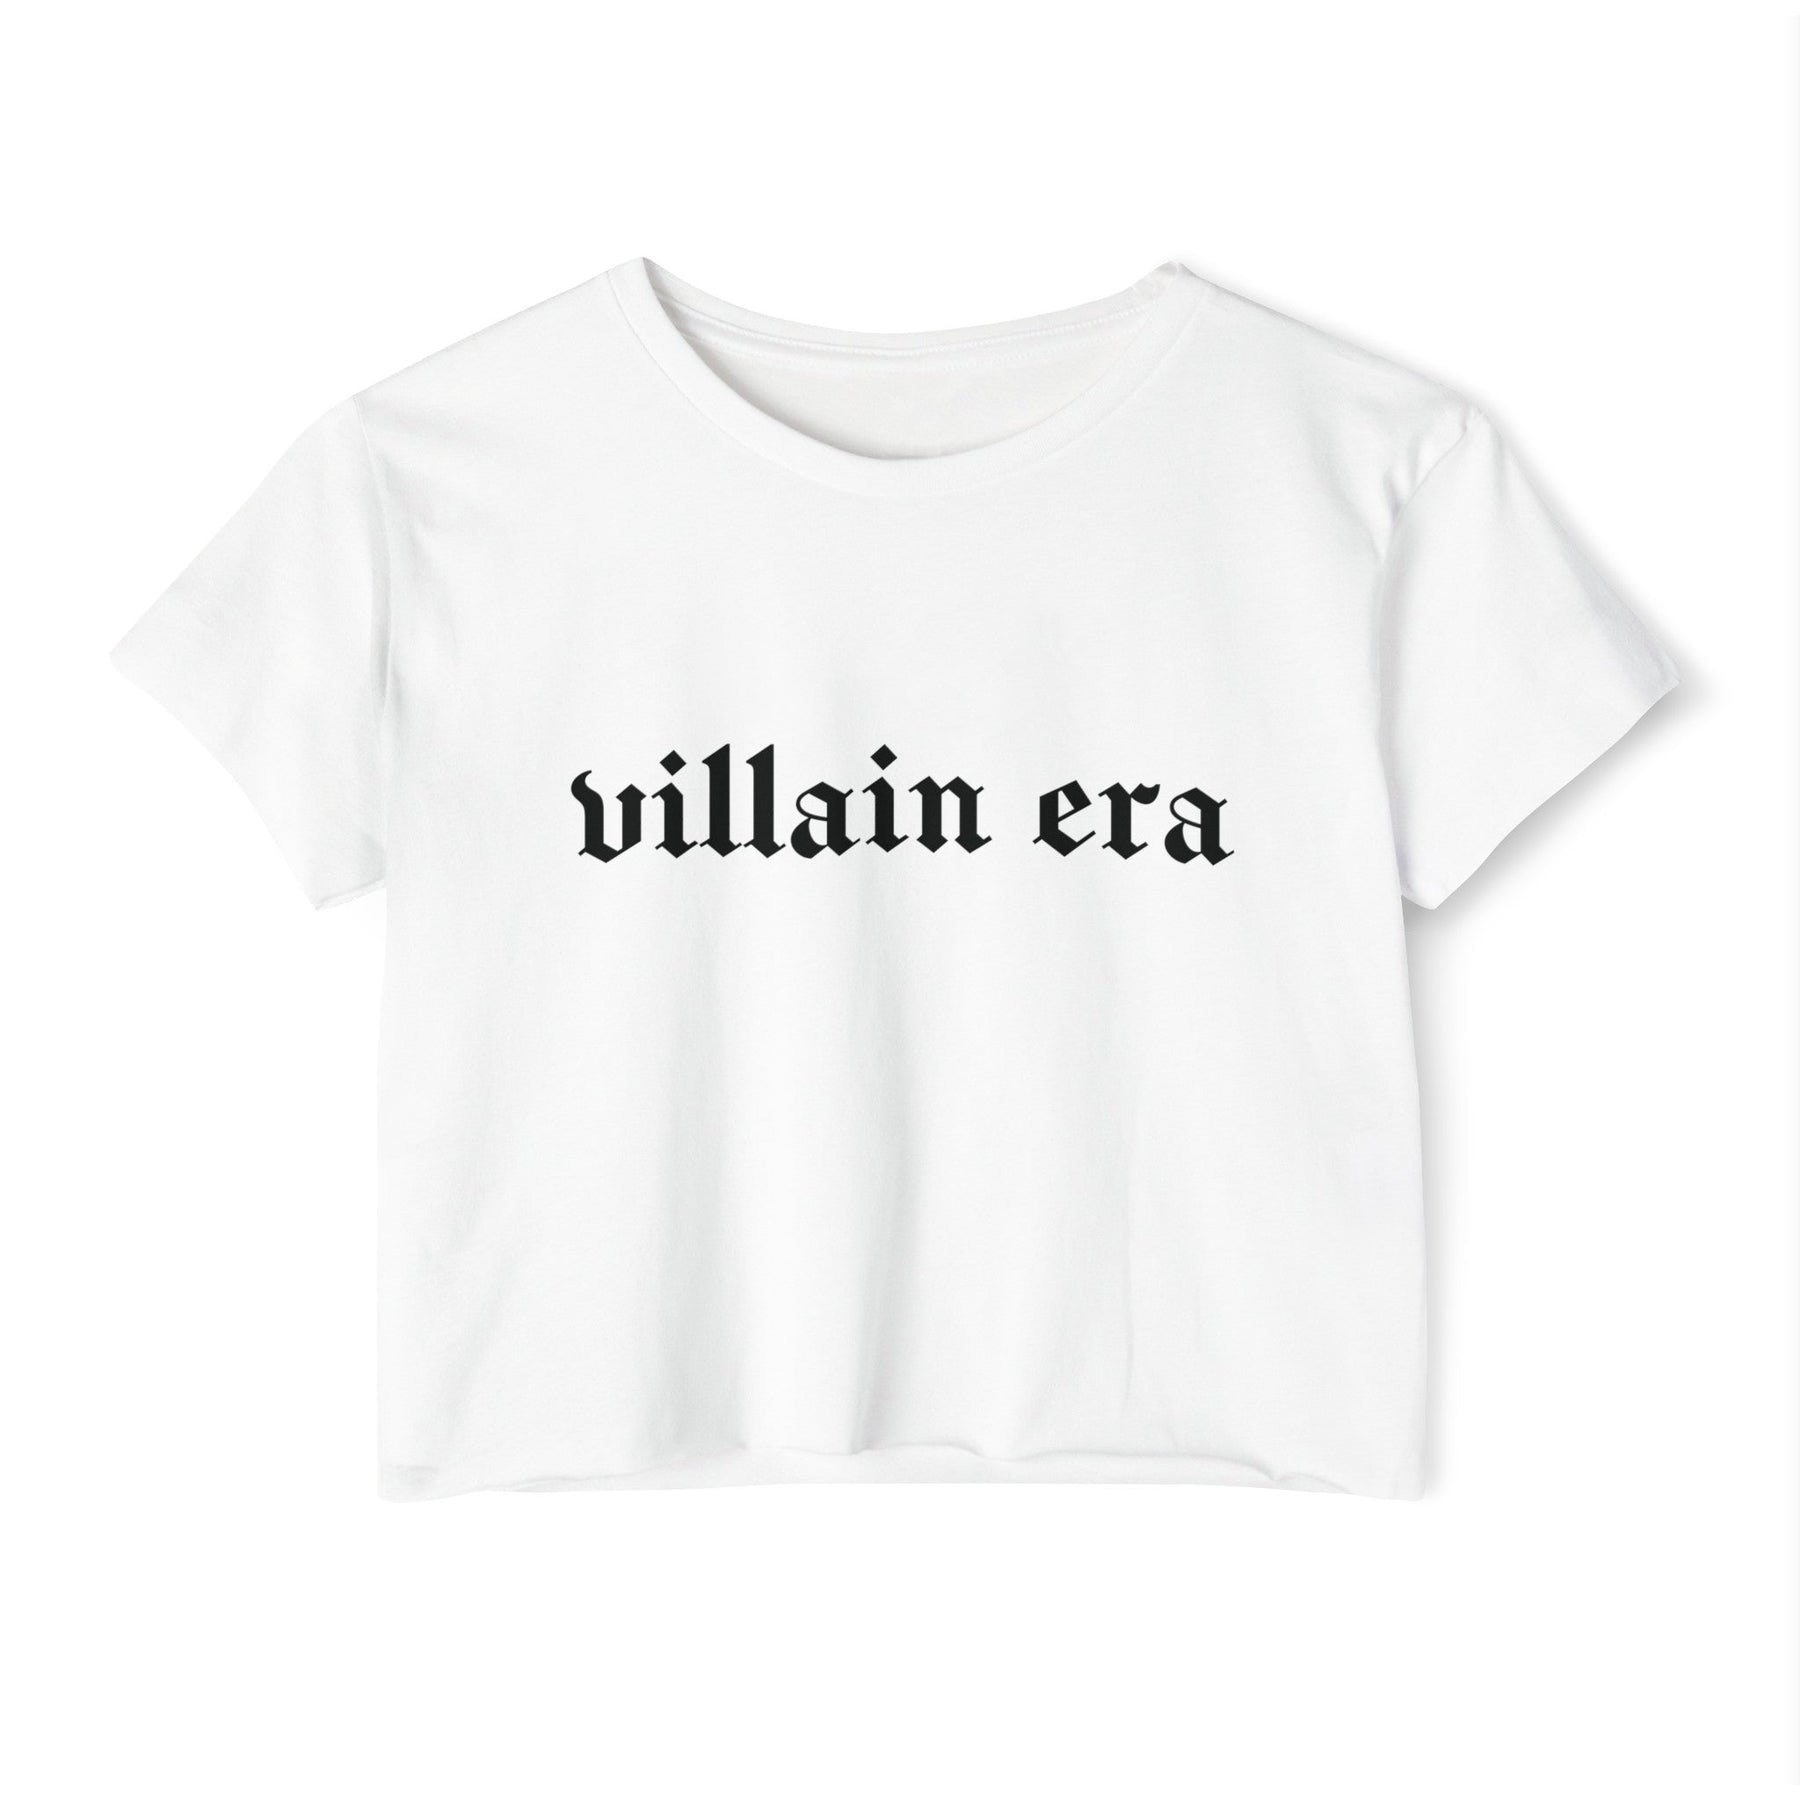 Villain Era Women's Lightweight Crop Top - Goth Cloth Co.T - Shirt21486934031984252163